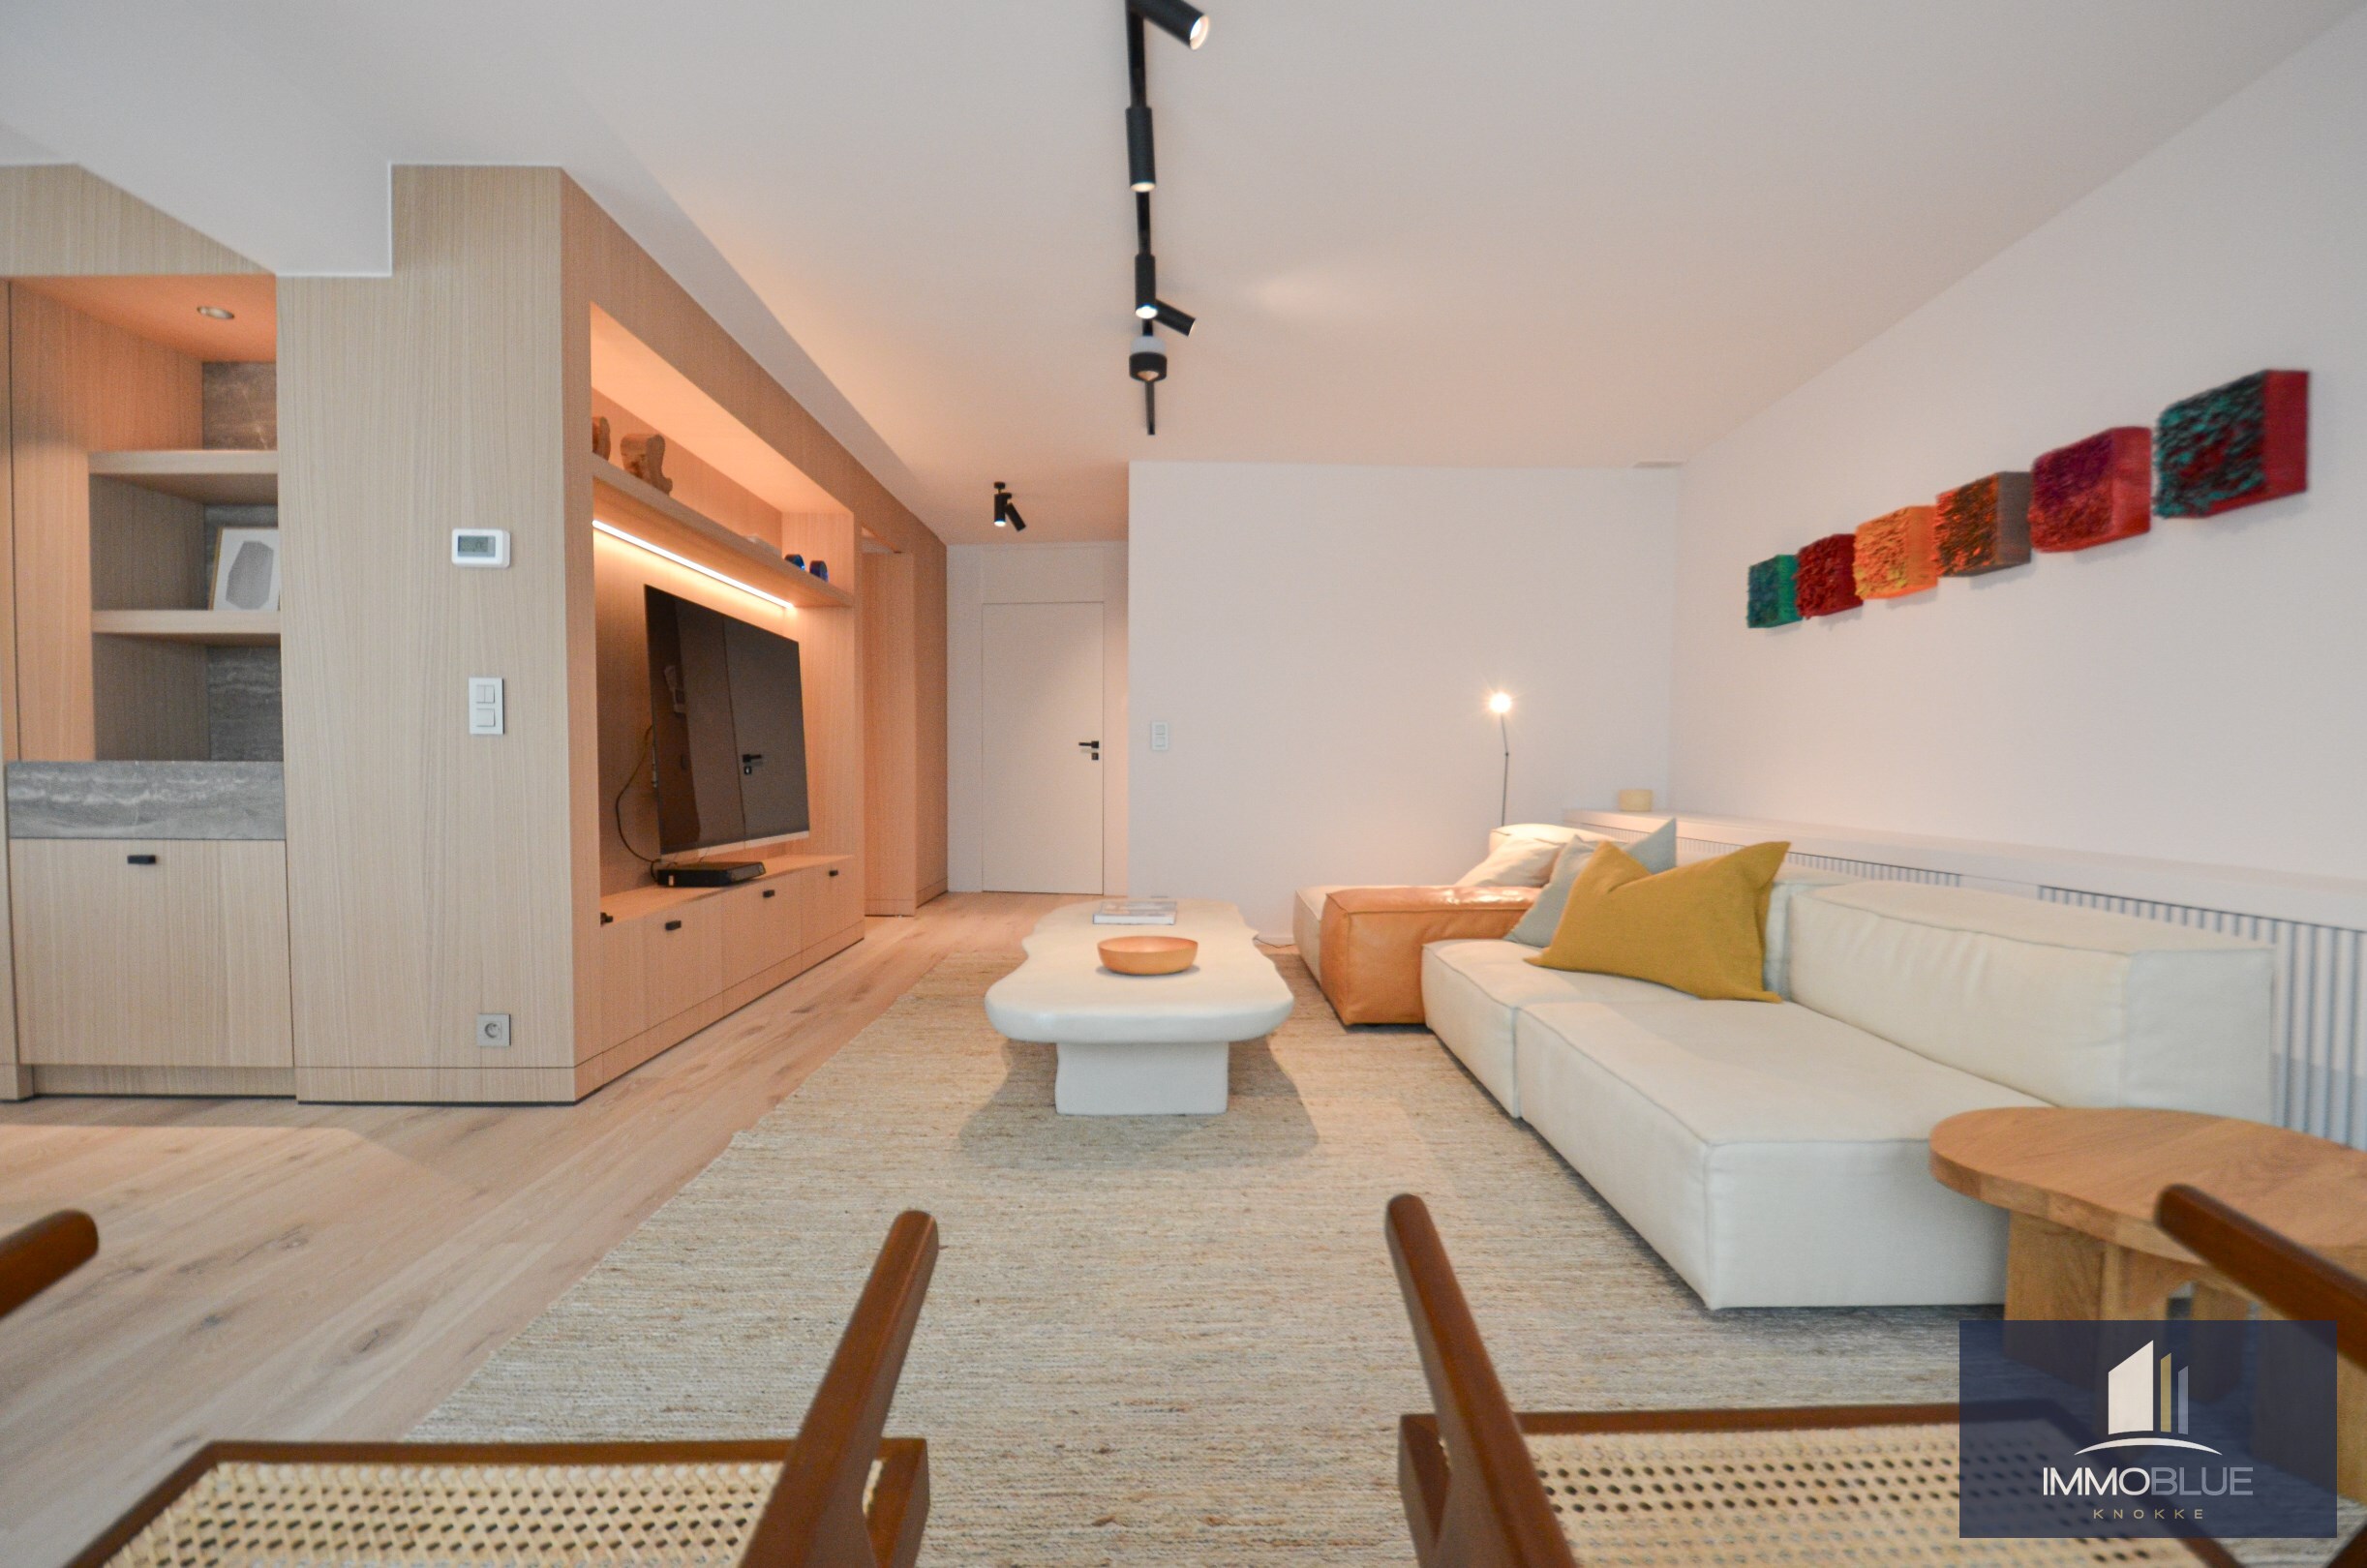 Subliem volledig gerenoveerd appartement met mooi zijdelings zeezicht gelegen in het Zoute. 